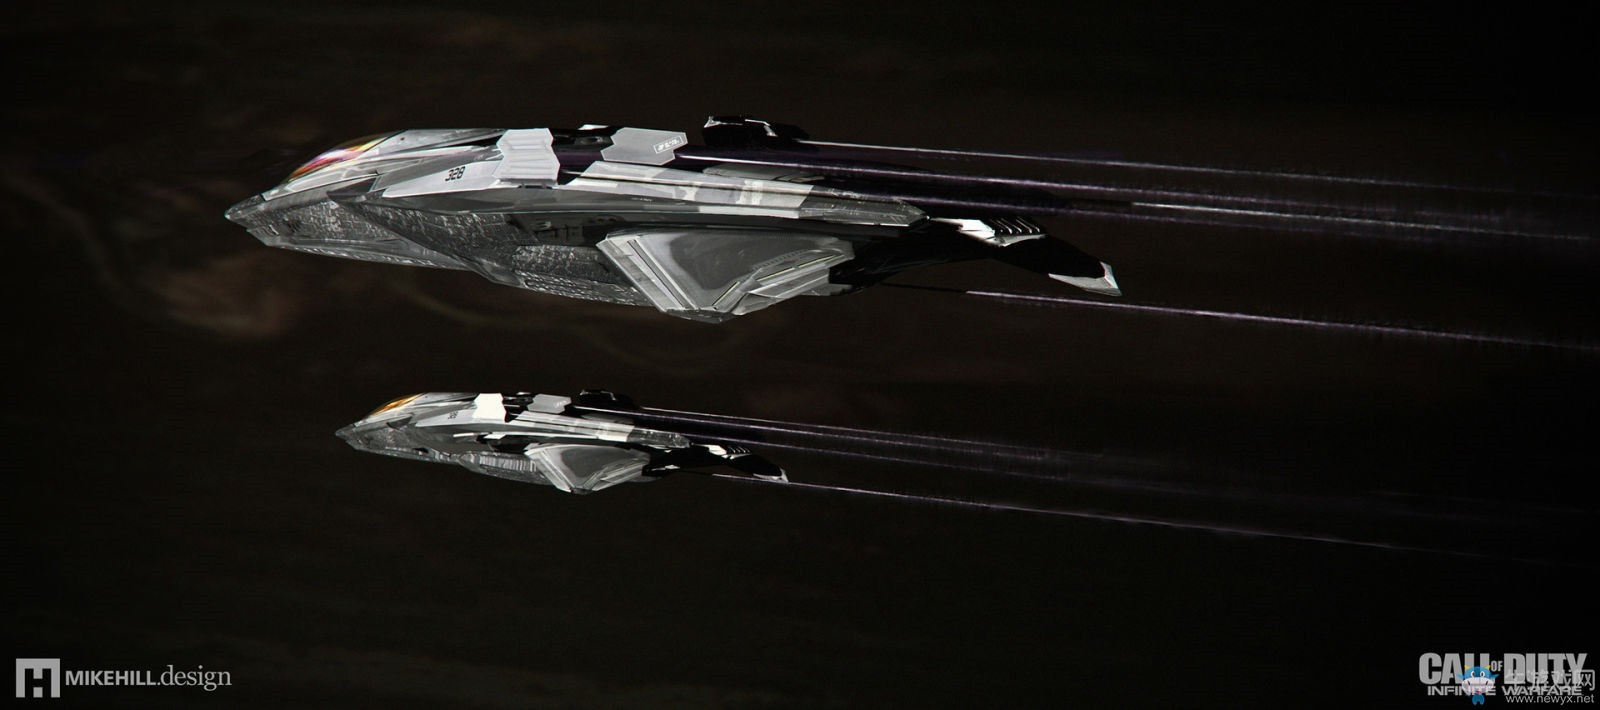 《使命召唤13》飞船原画公布 多数飞船设计源于现实的真实战机